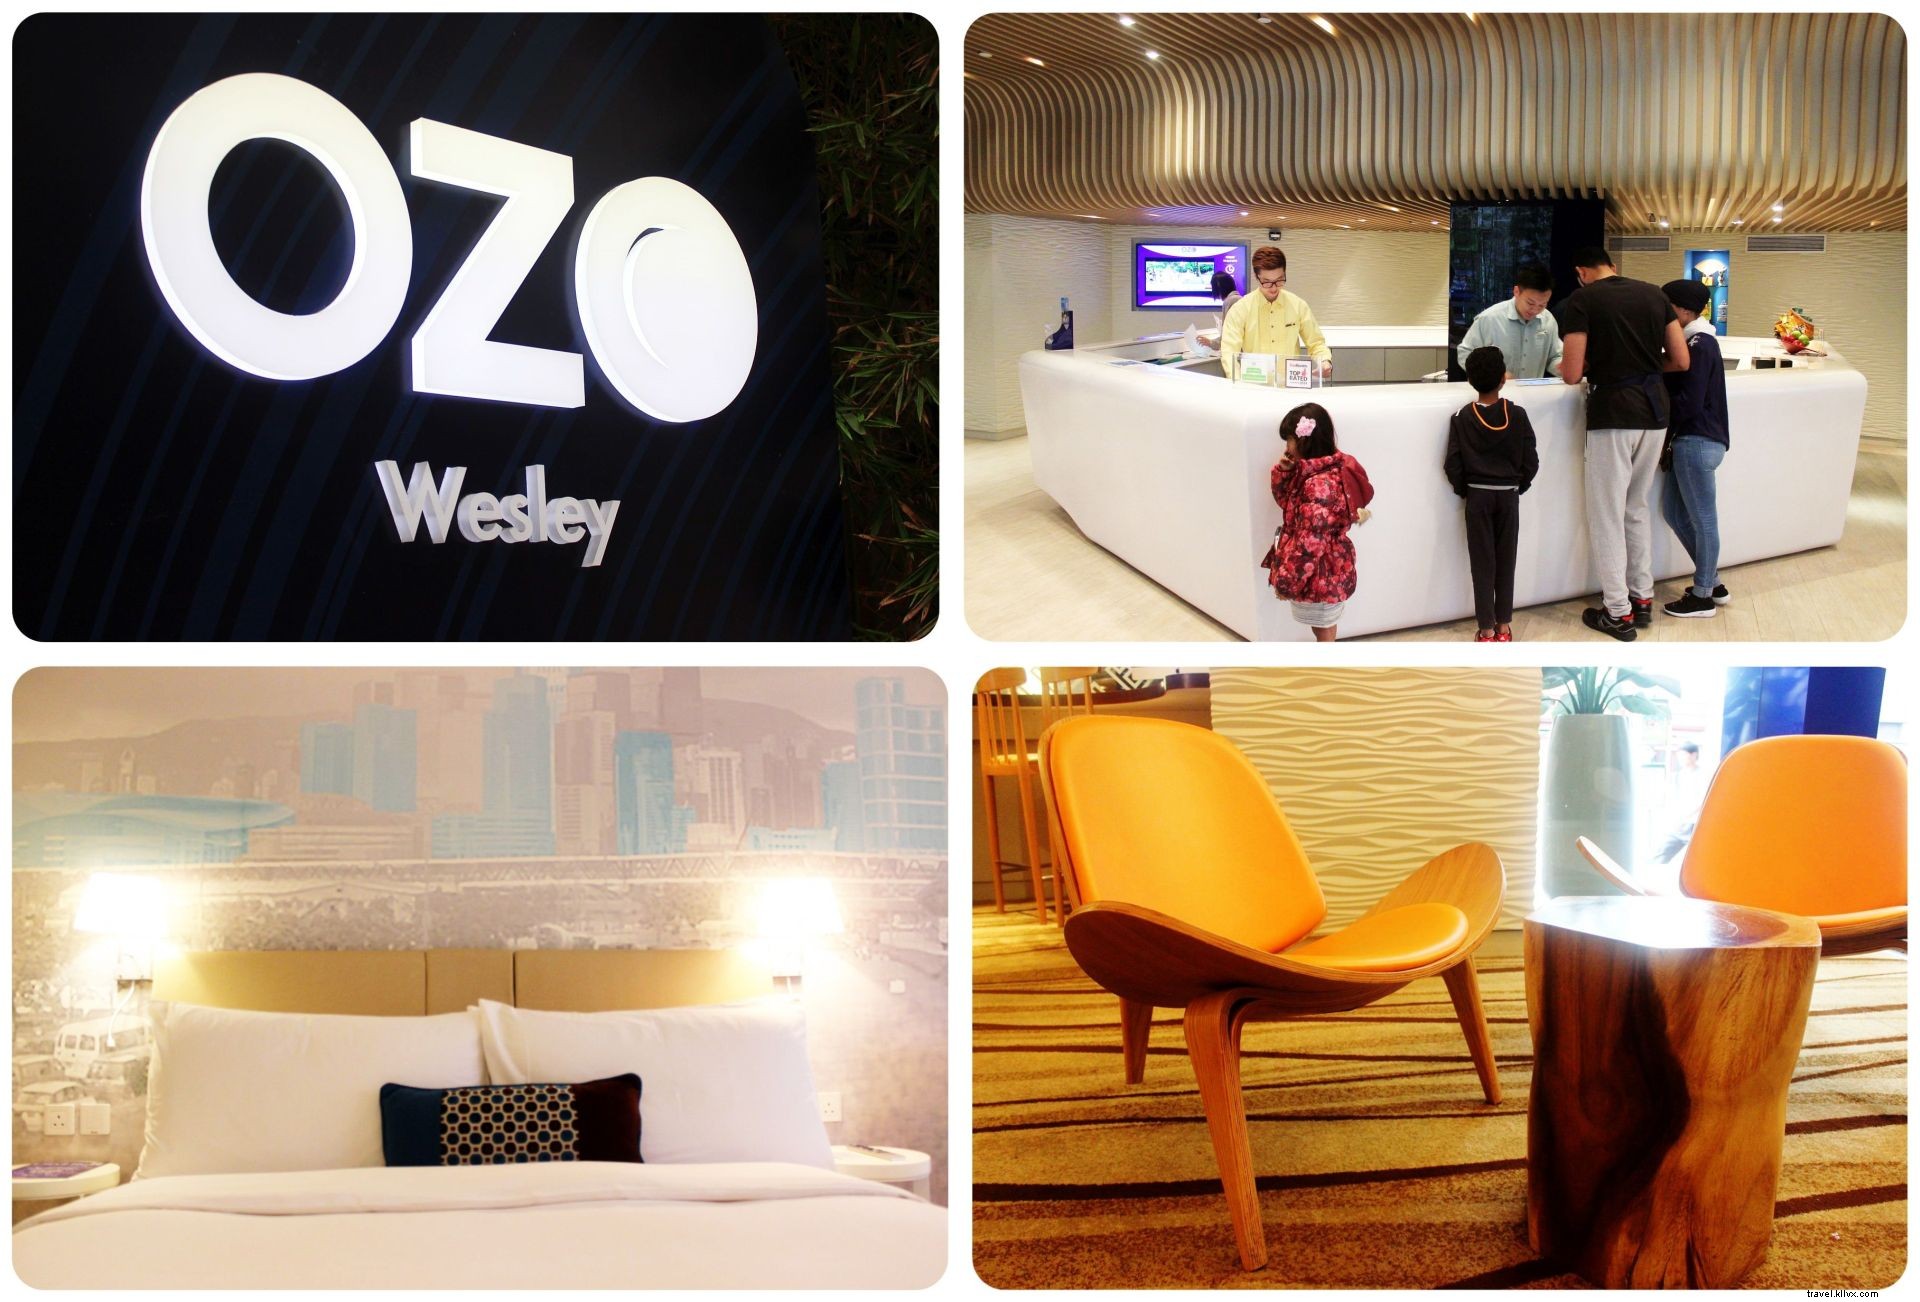 Dónde alojarse en Hong Kong:el OZO Wesley en Wan Chai